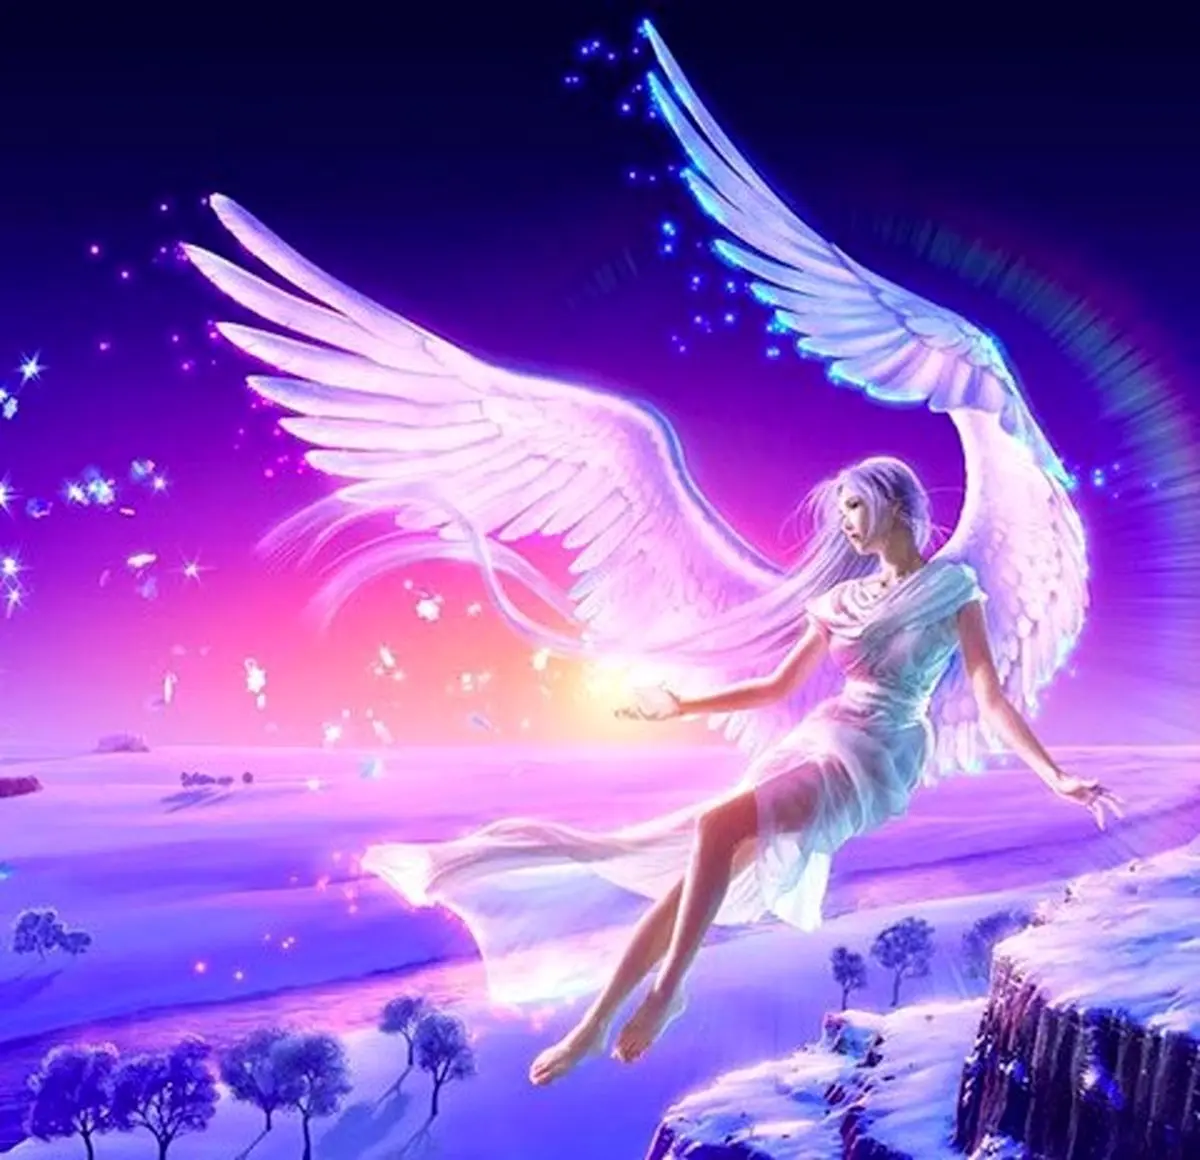 فال فرشتگان 12 آبان ماه | فرشتگان برای شما چه پیام مثبتی دارند؟